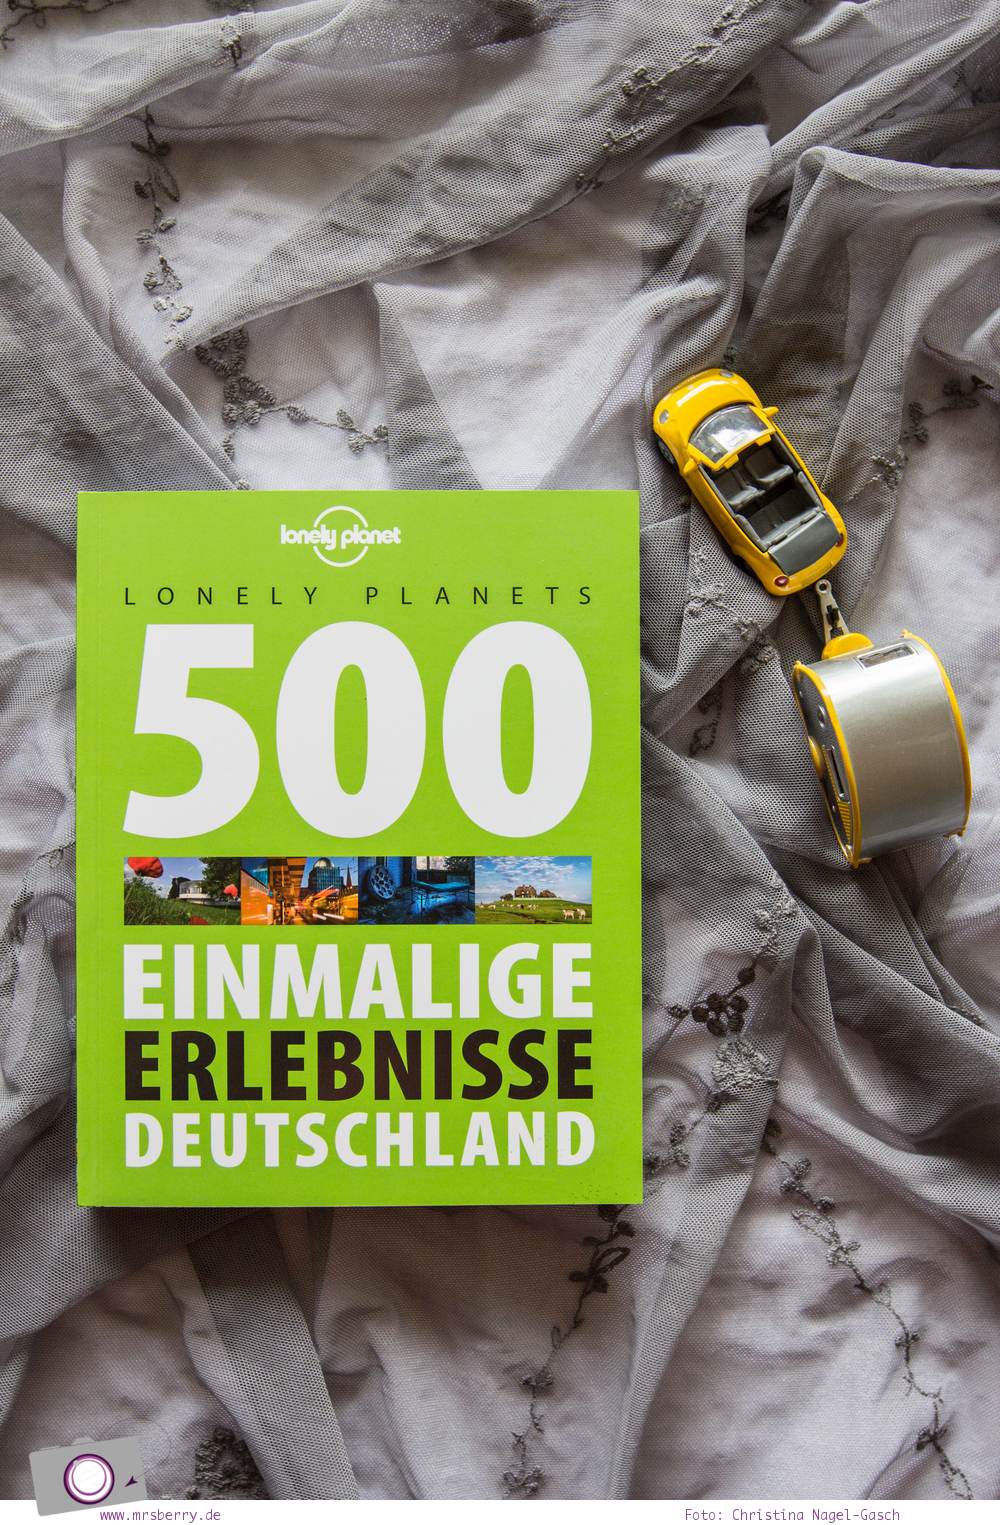 MrsBerry's Sommer Lieblinge - meine Lieblingsdinge die mich diesen Sommer begleiten und glücklich machen - aus dem Bücherregal: 500 Einmalige Erlebnisse in Deutschlandvom Lonely Planet